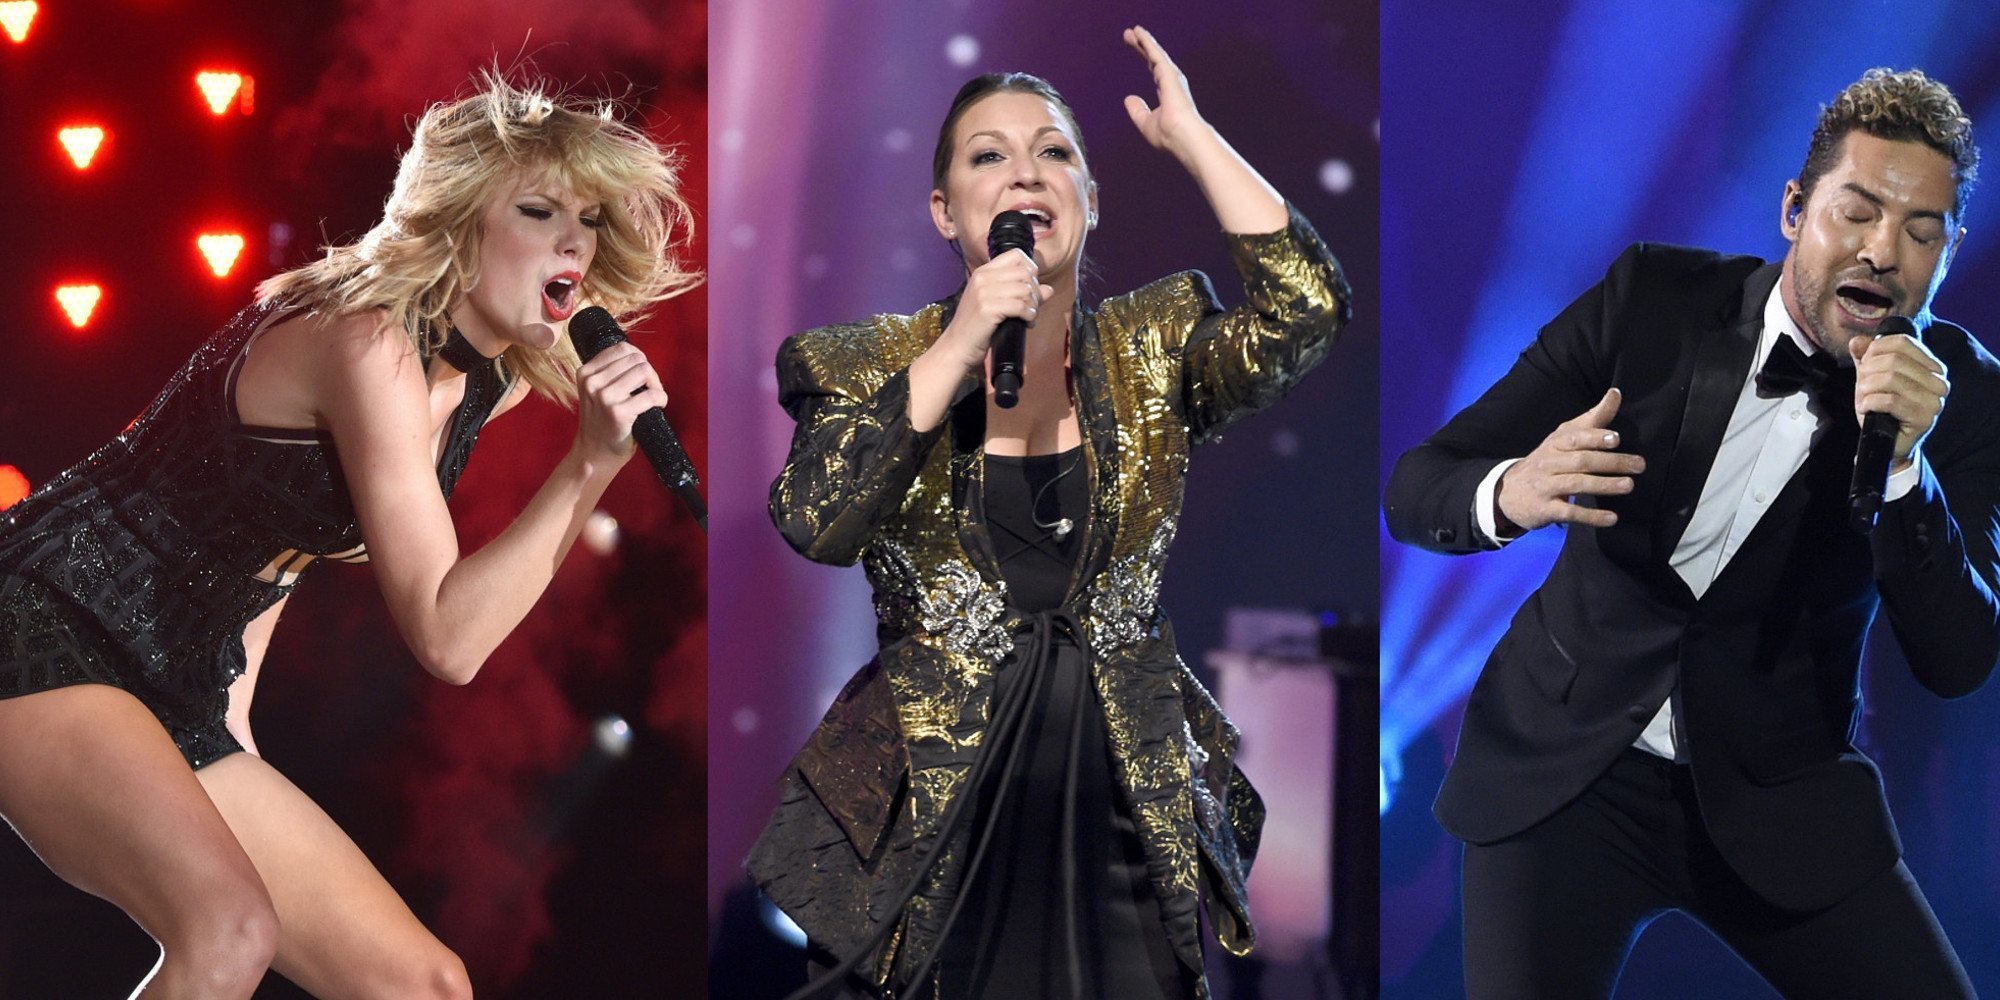 Taylor Swift, Niña Pastori y David Bisbal, protagonistas de los nuevos lanzamientos musicales